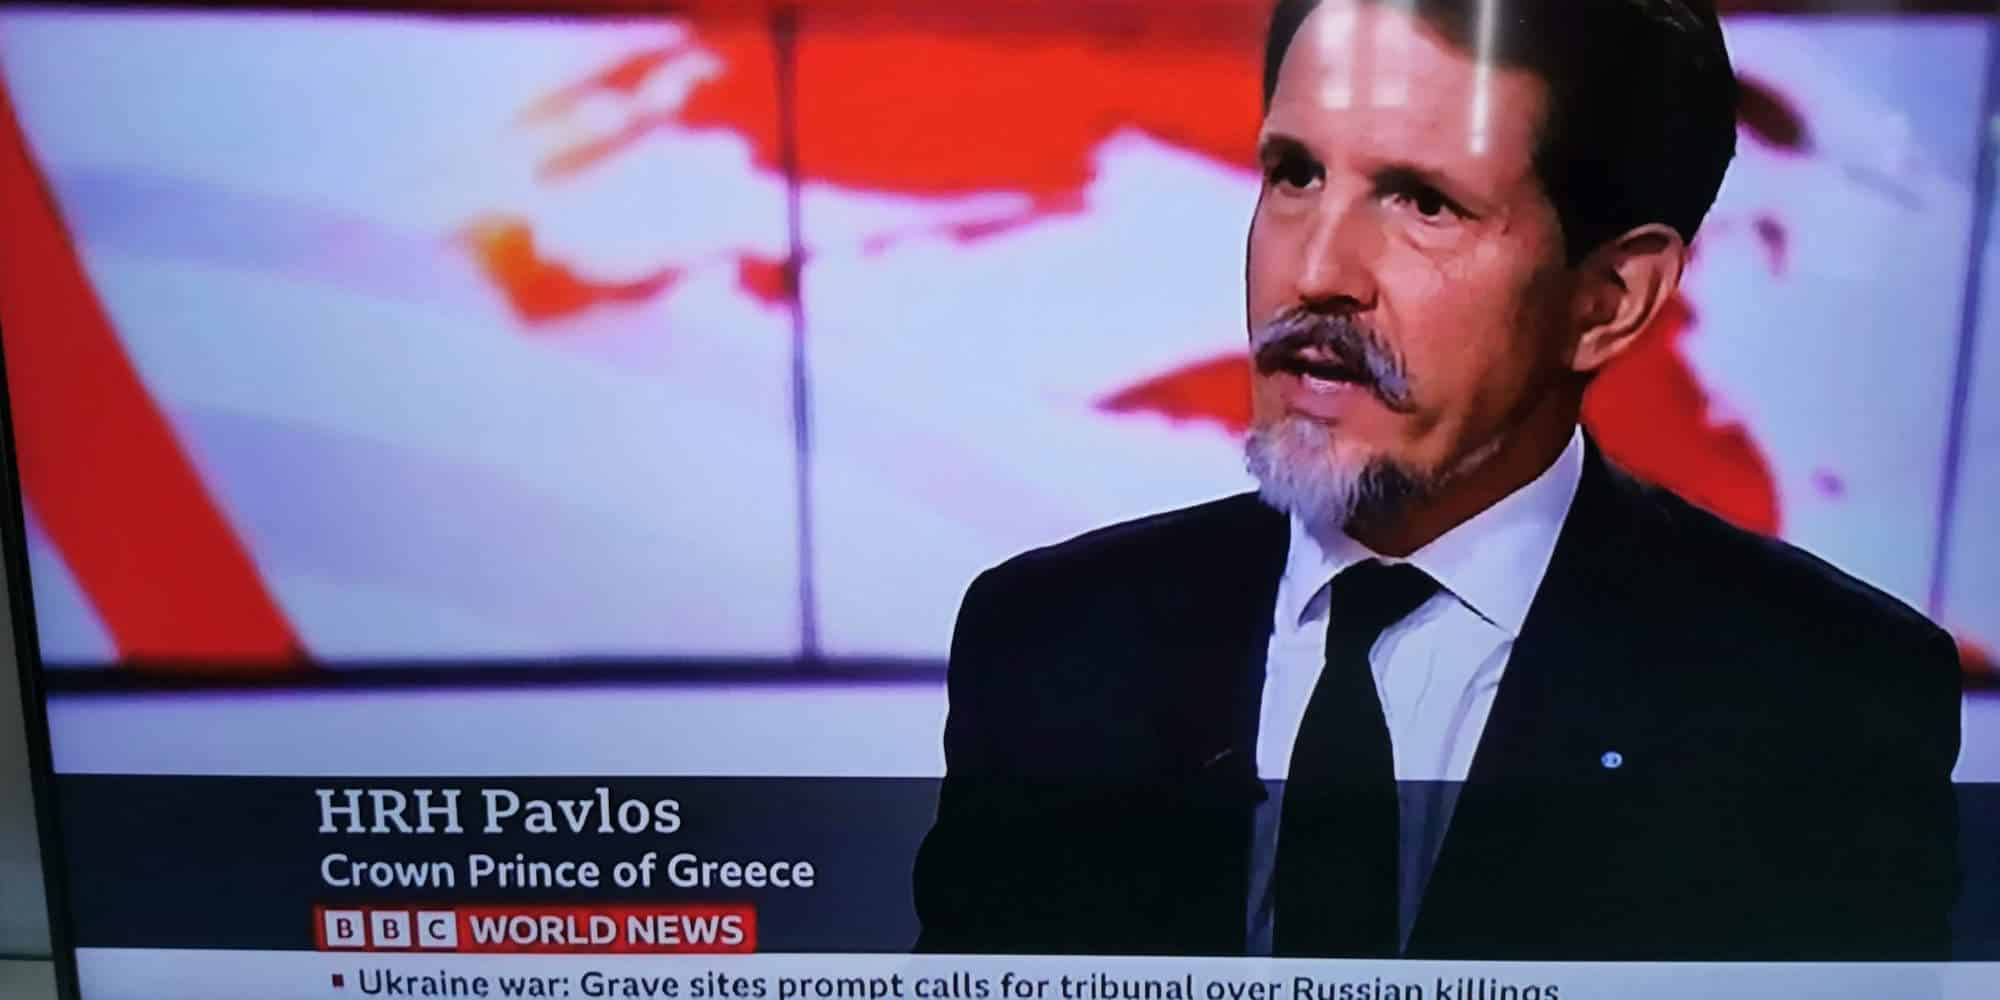 Η εσφαλμένη απόδοση στον Παύλο του τίτλου του «Διαδόχου του θρόνου, πρίγκιπα της Ελλάδας» από το BBC